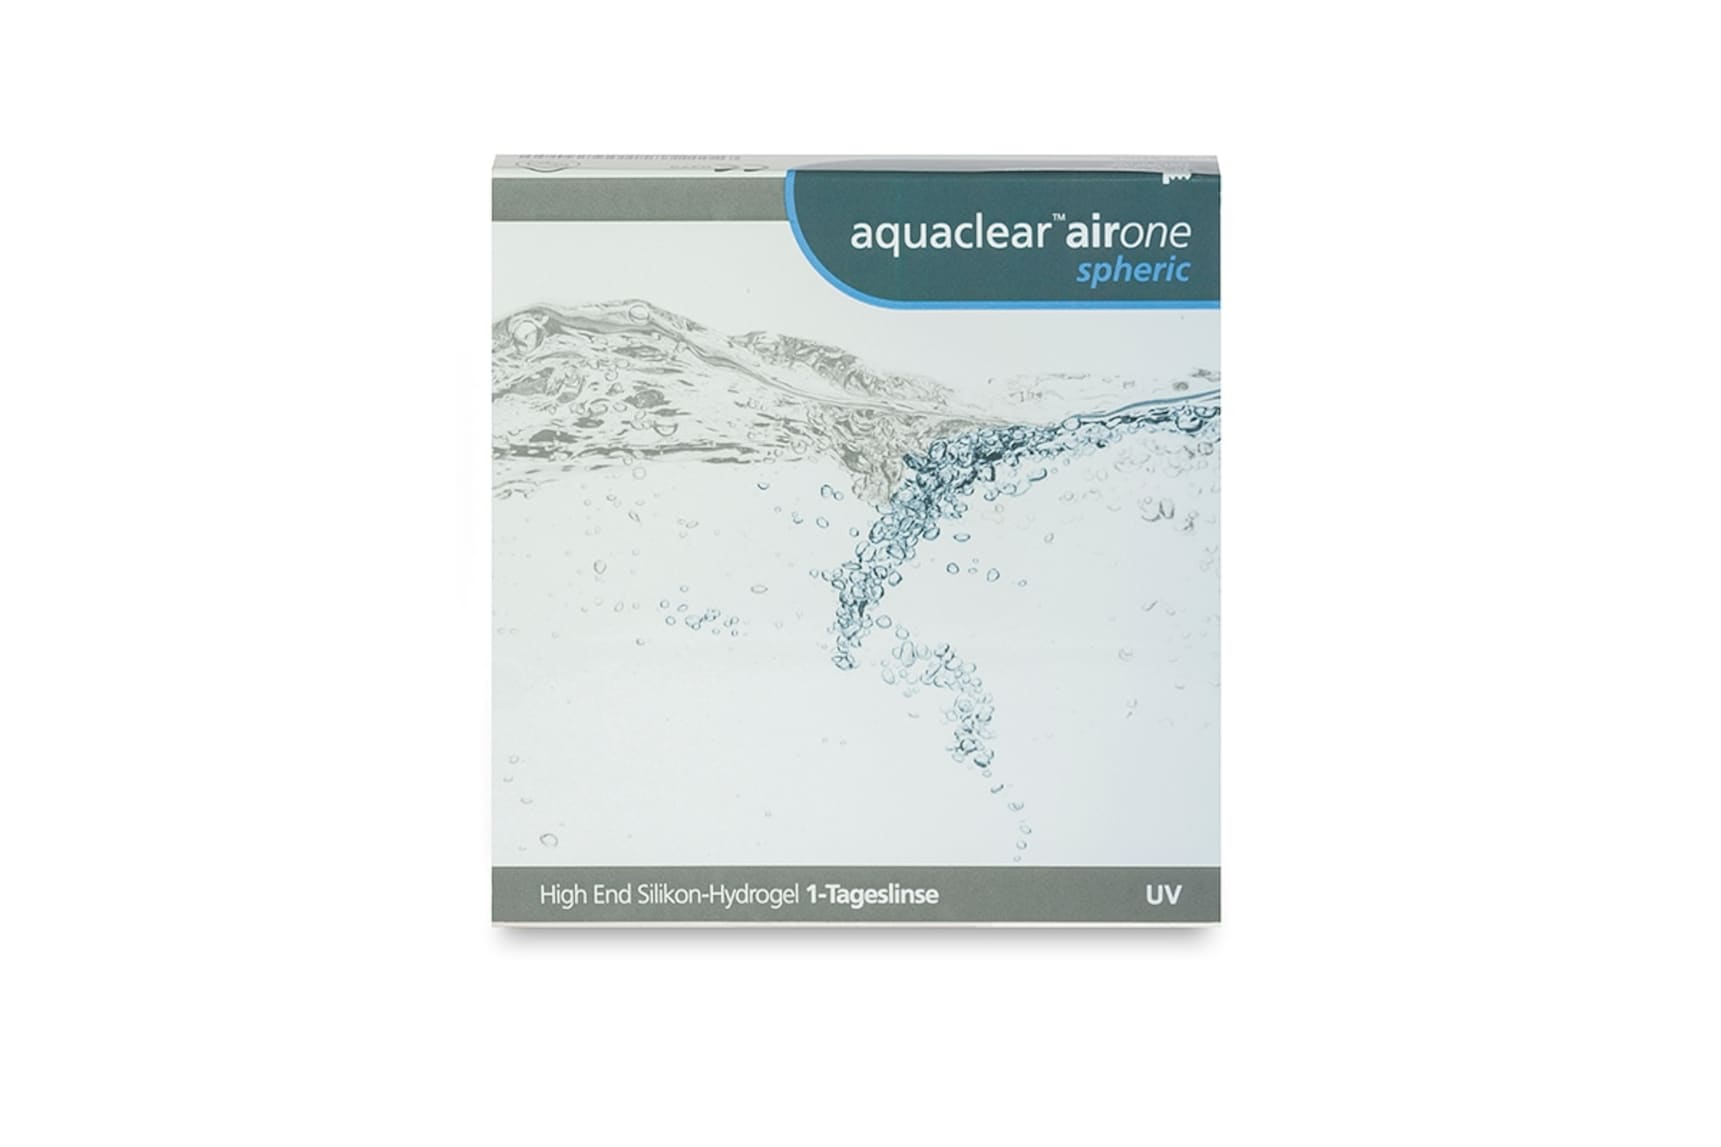 Aquaclear airOne